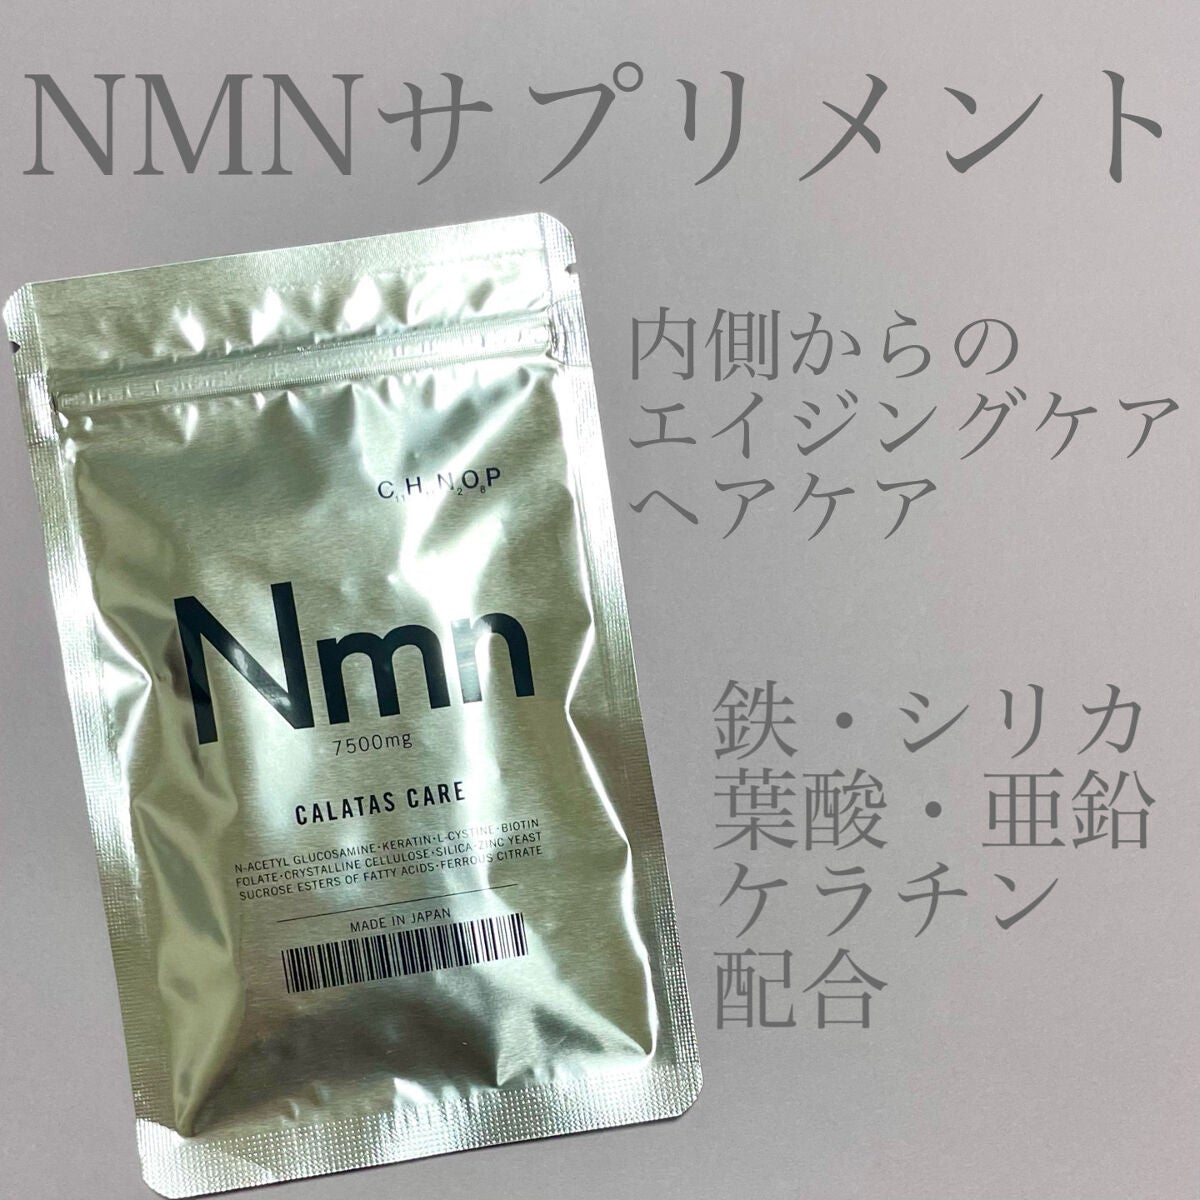 期間限定価格⭐︎95万円のNMNと同じ量⭐︎飲むダイエットサプリ✓1ヶ月